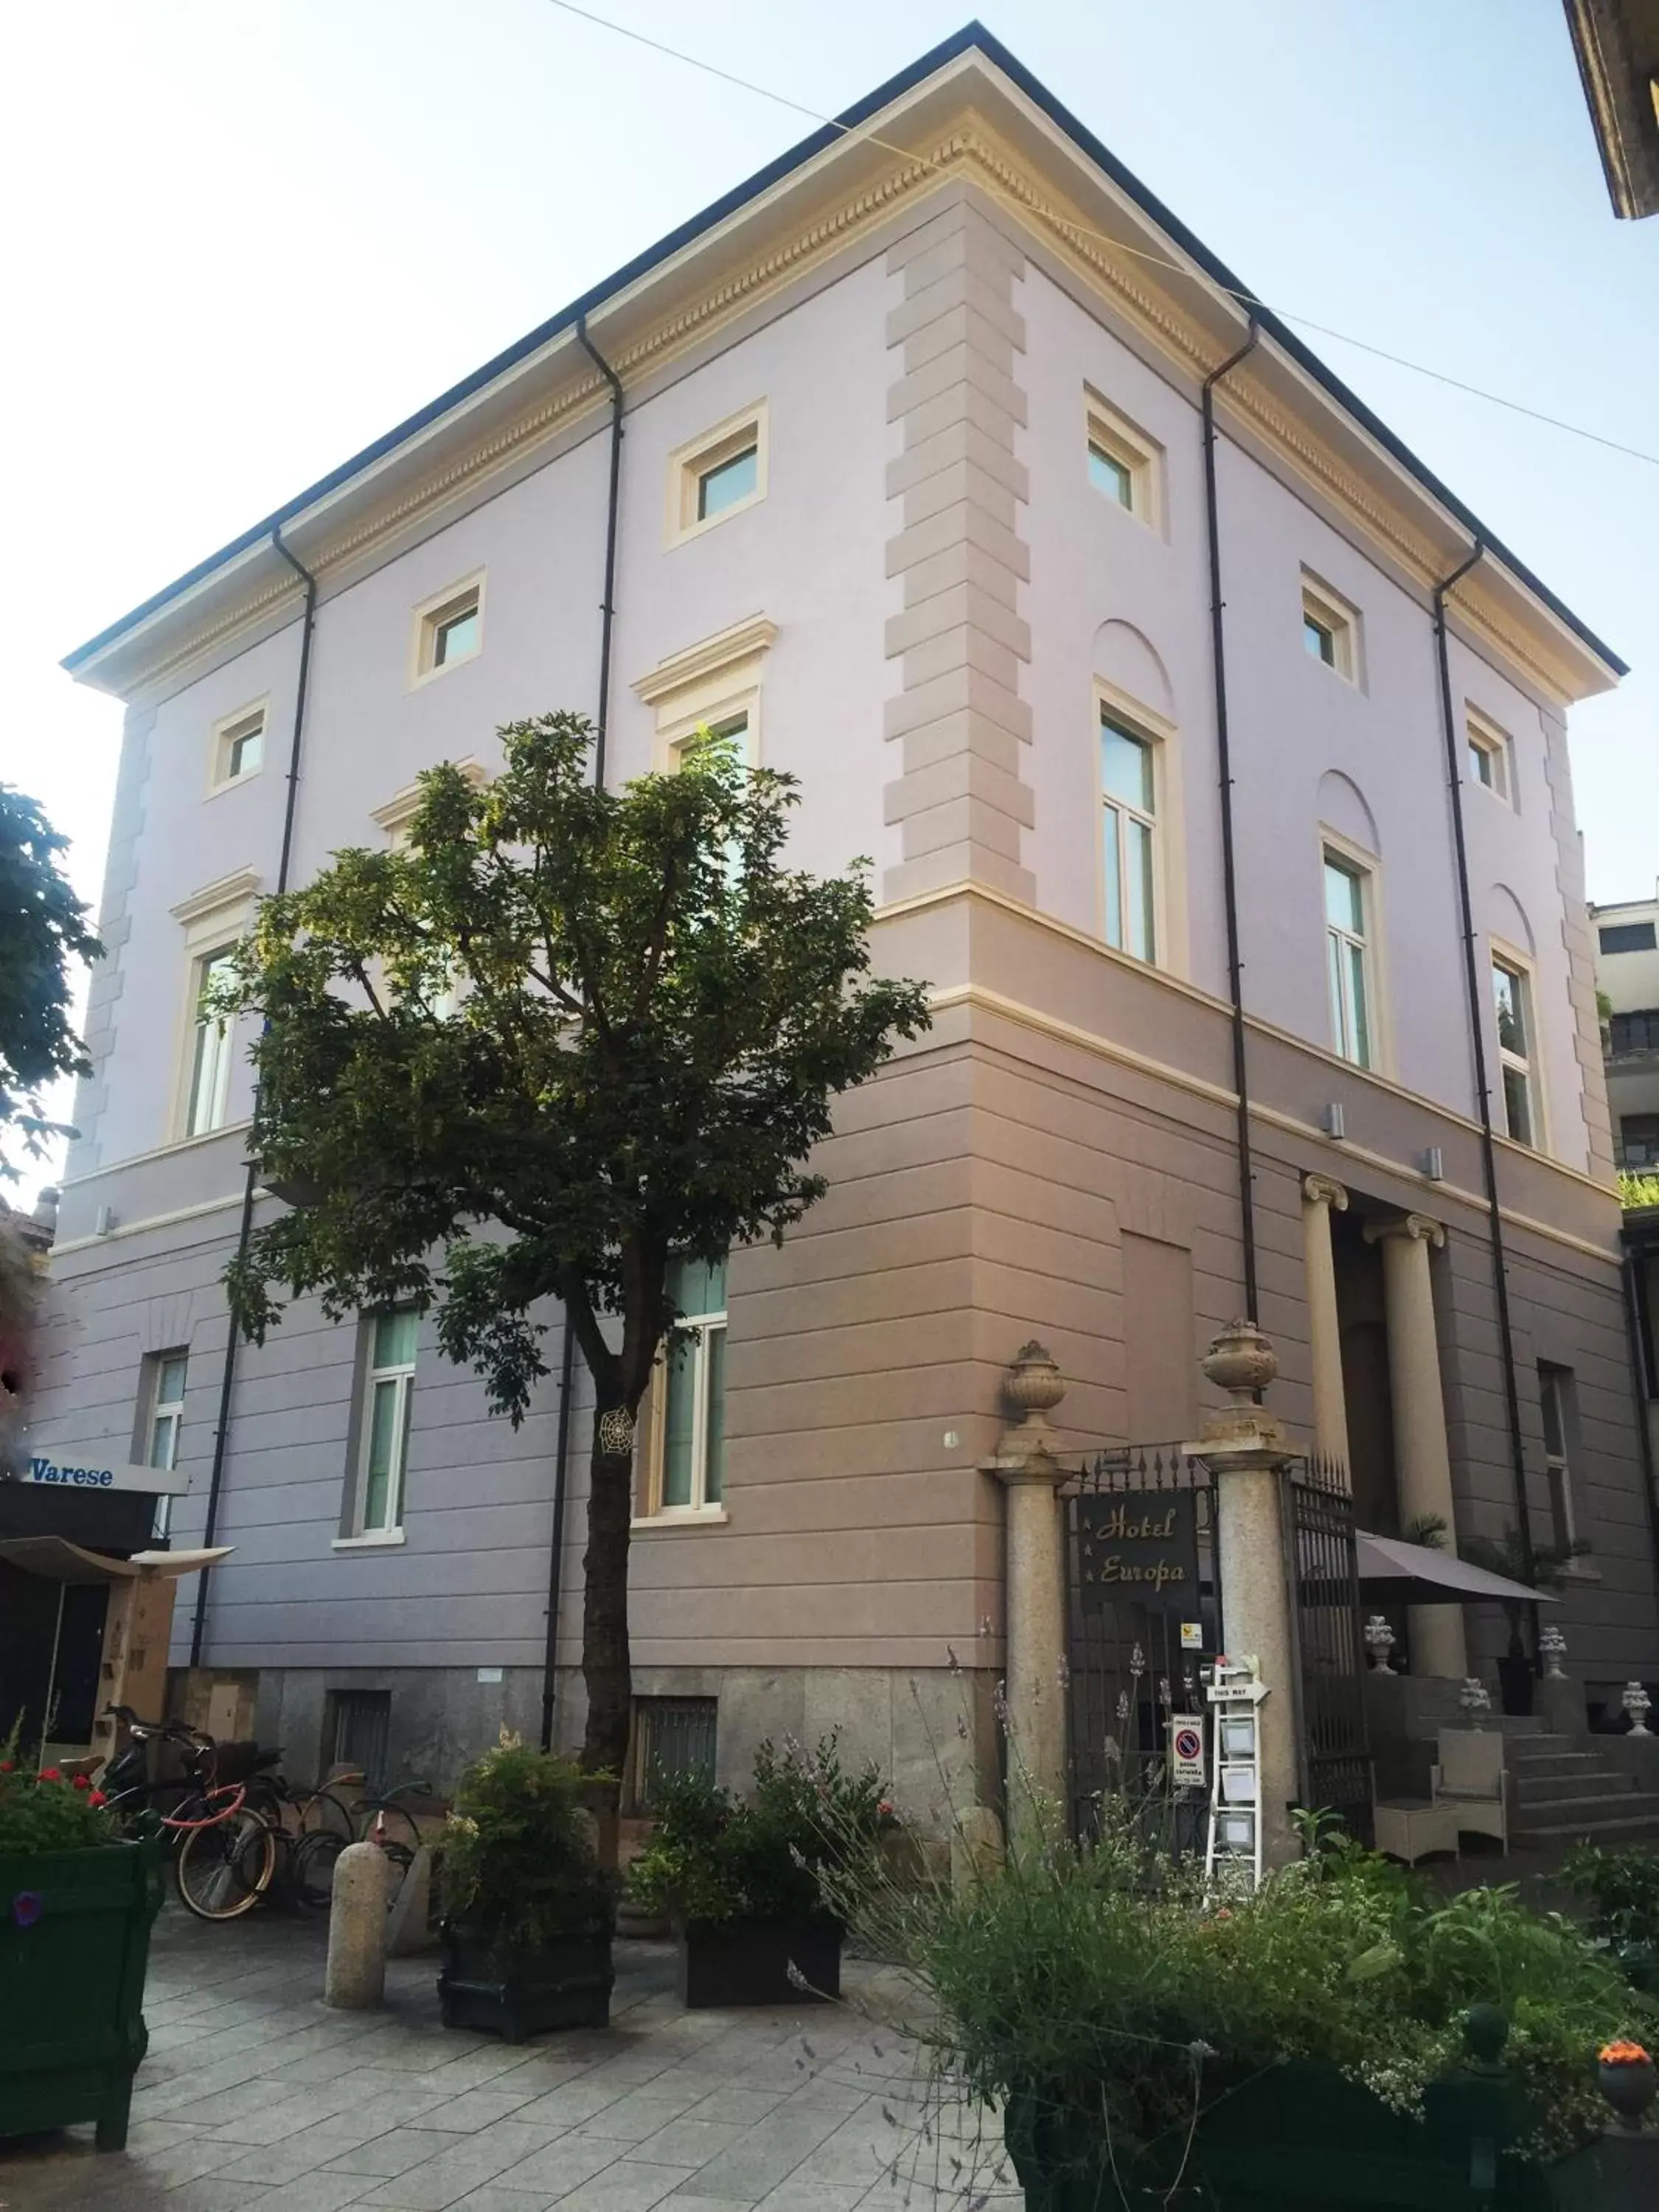 Facade/entrance, Property Building in Hotel Europa Varese